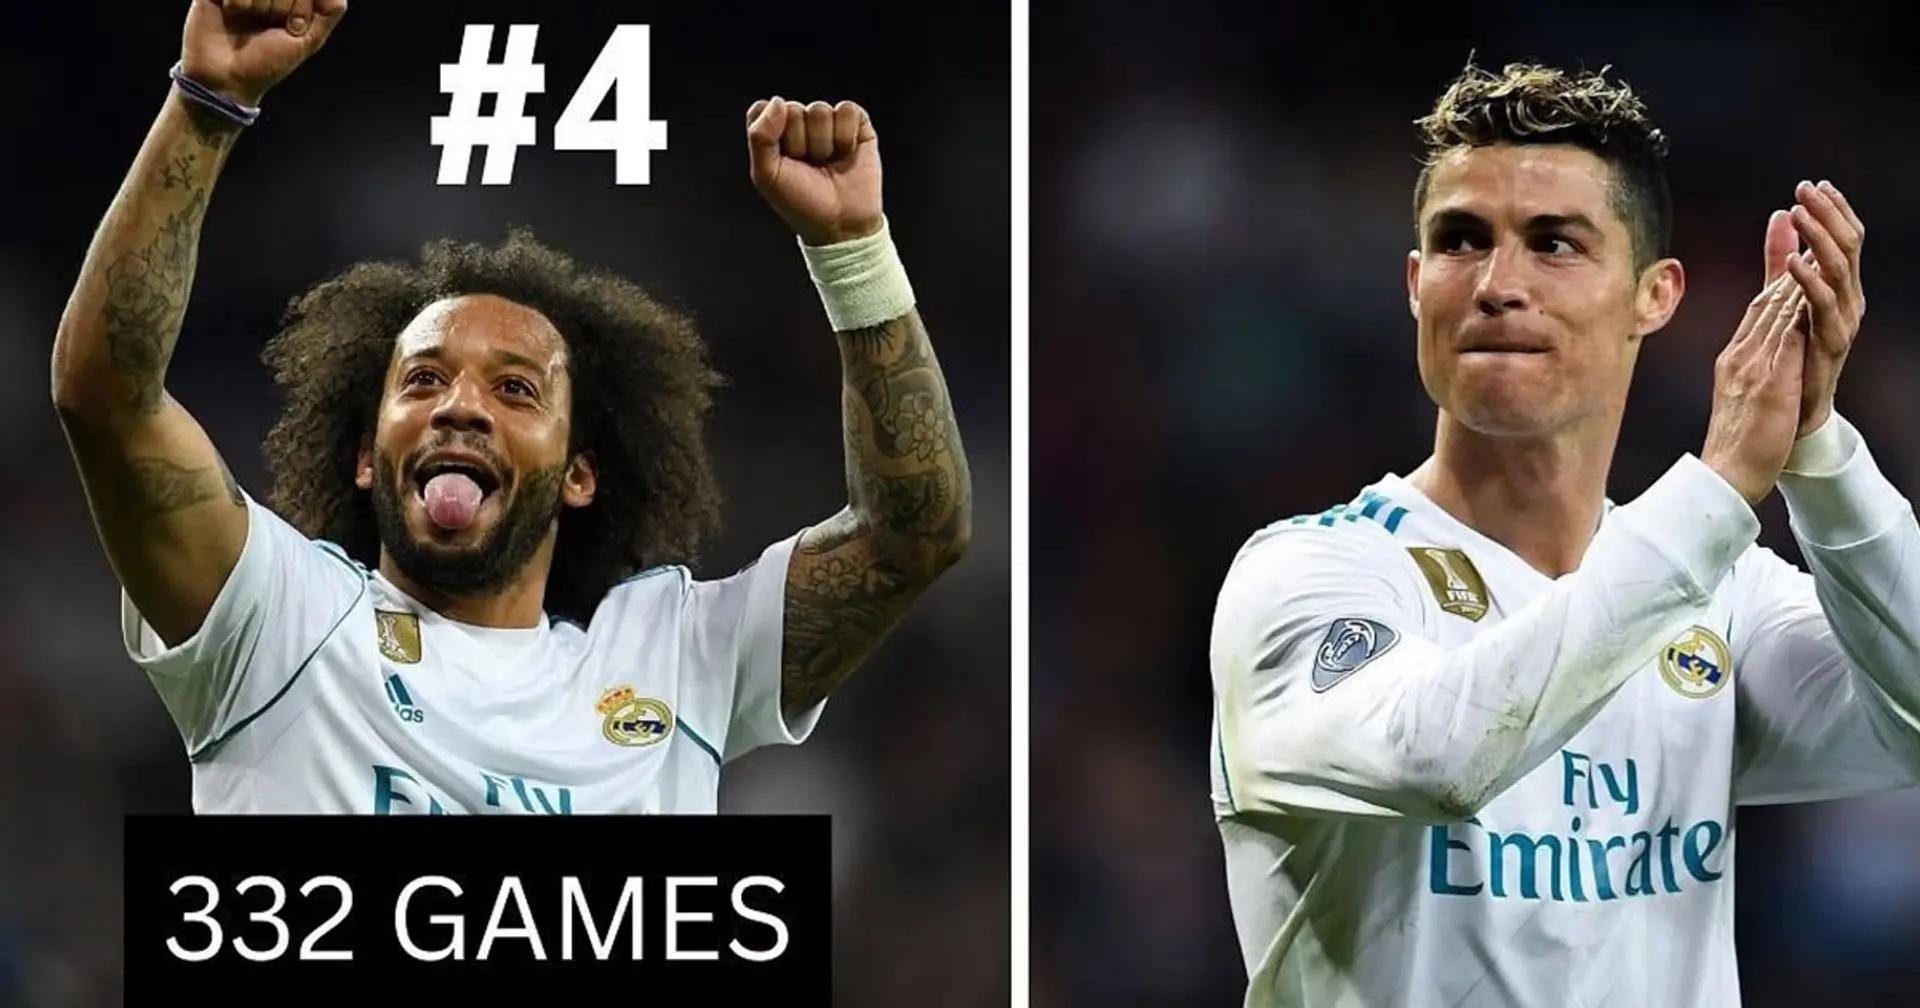 Die 5 Spieler, die am häufigsten neben Cristiano Ronaldo gespielt haben, sind alle Madridistas  